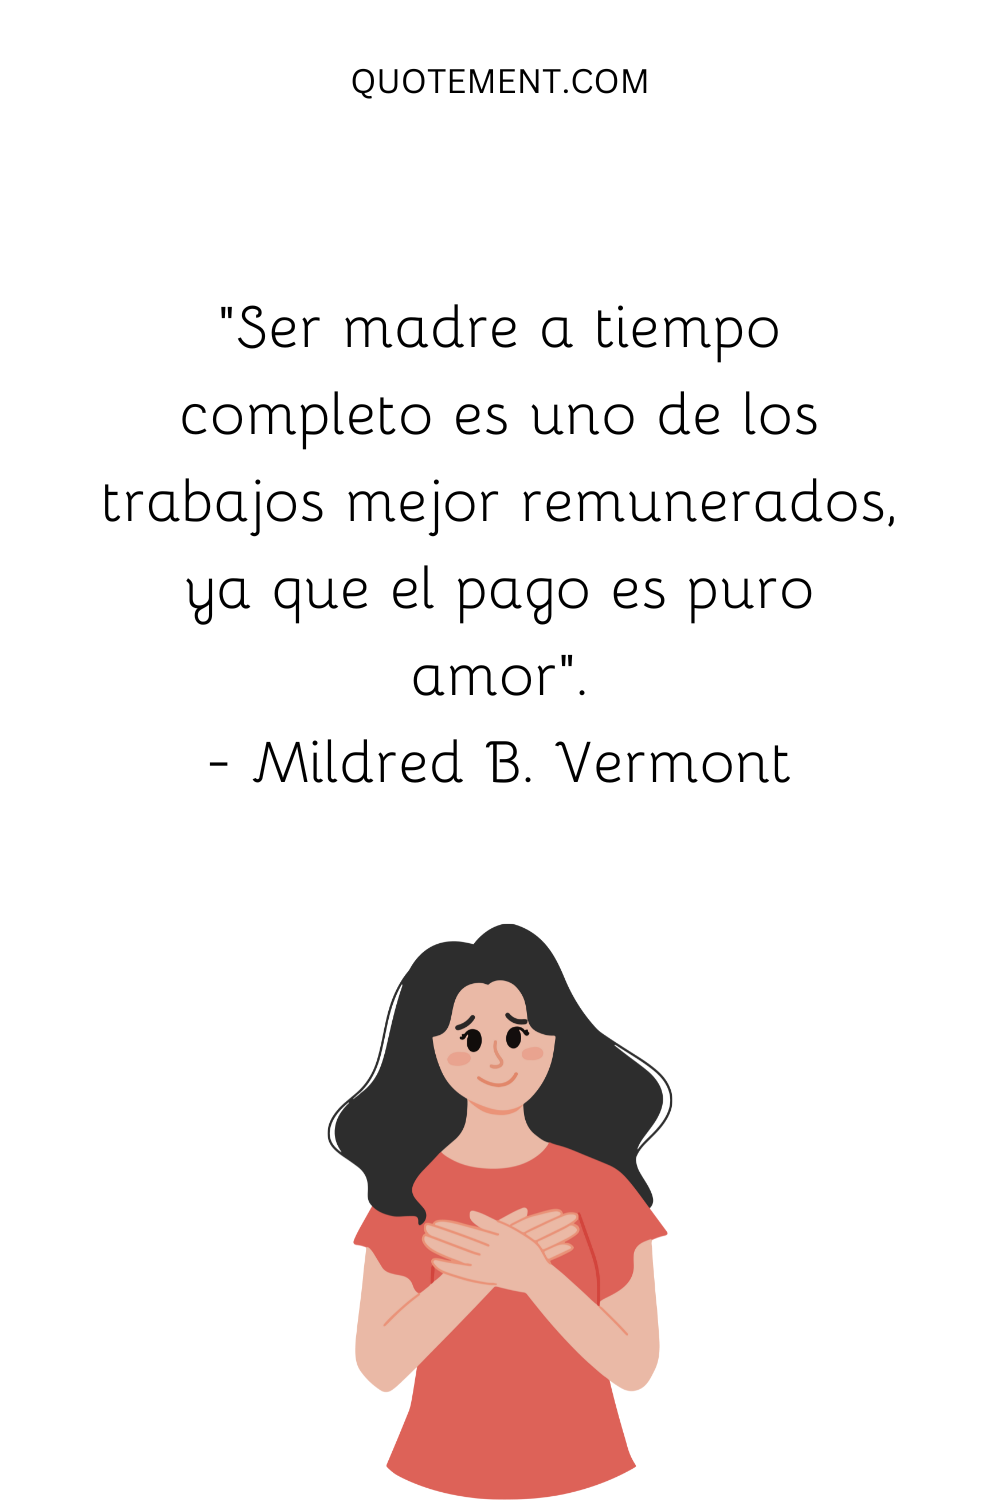 "Ser madre a tiempo completo es uno de los trabajos mejor remunerados, ya que el pago es puro amor". - Mildred B. Vermont